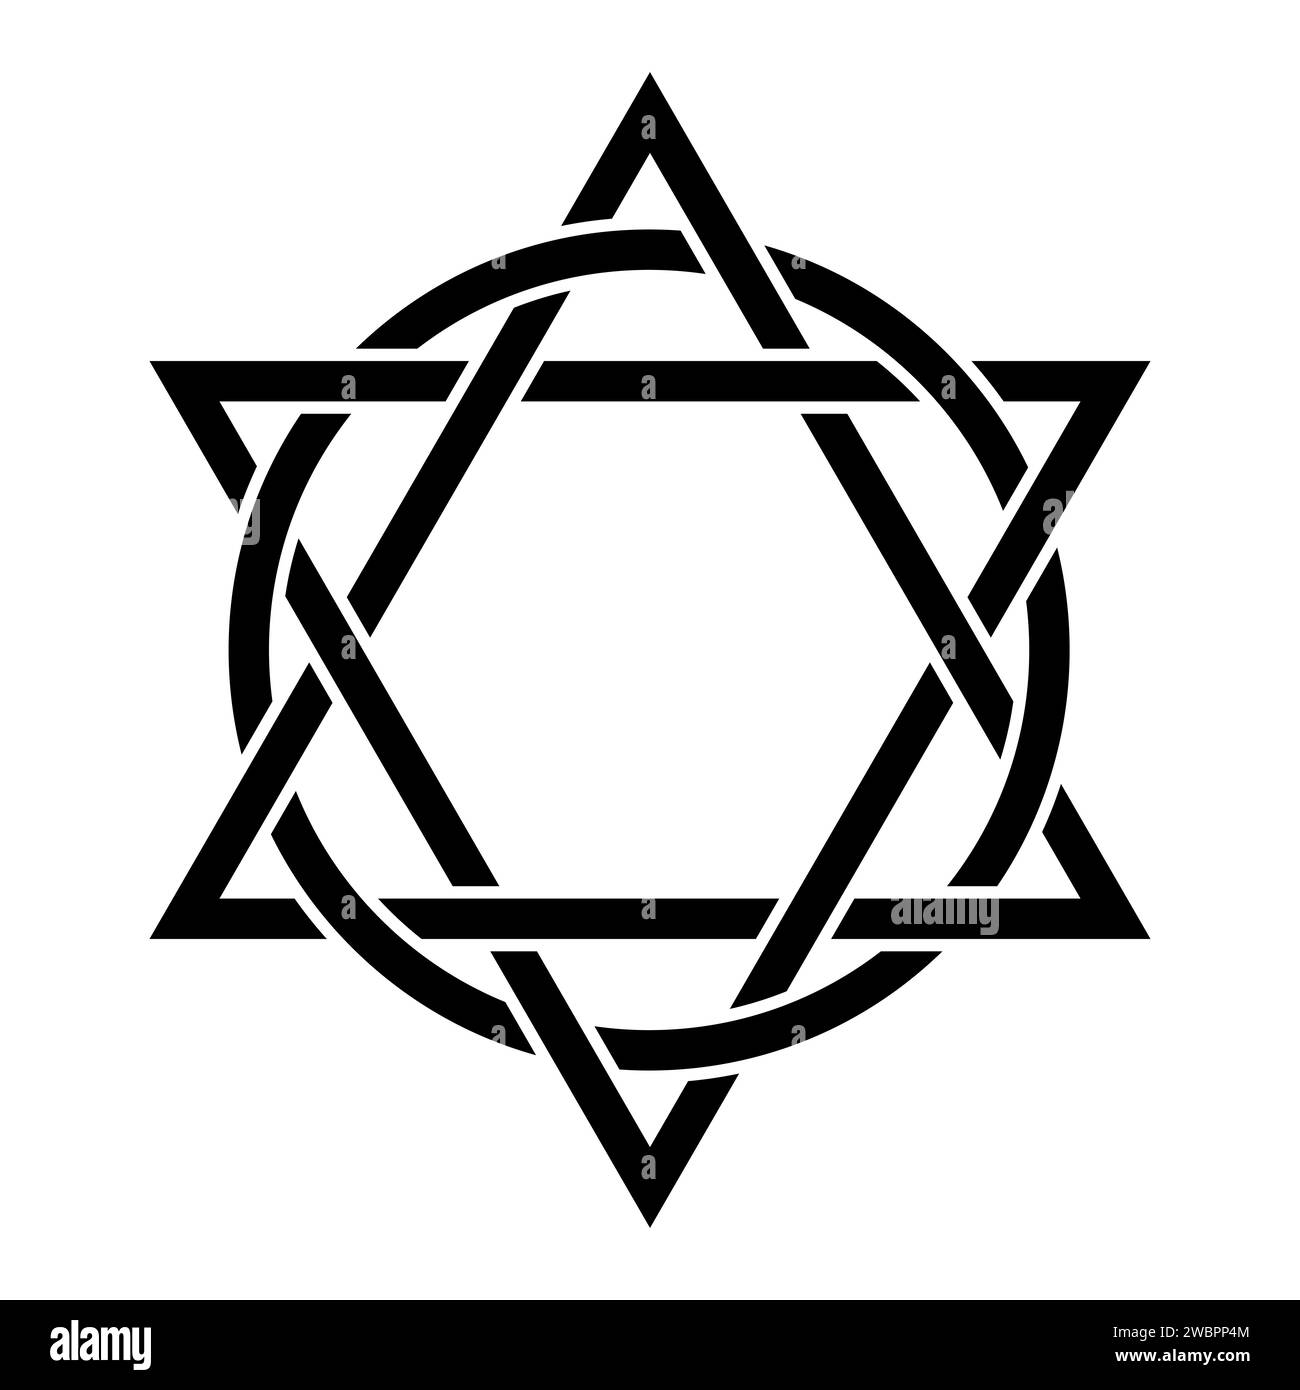 Simbolo di un esagramma con cerchi interlacciati. Due triangoli interlacciati con un cerchio. Emblema cristiano, che rappresenta la Trinità. Foto Stock